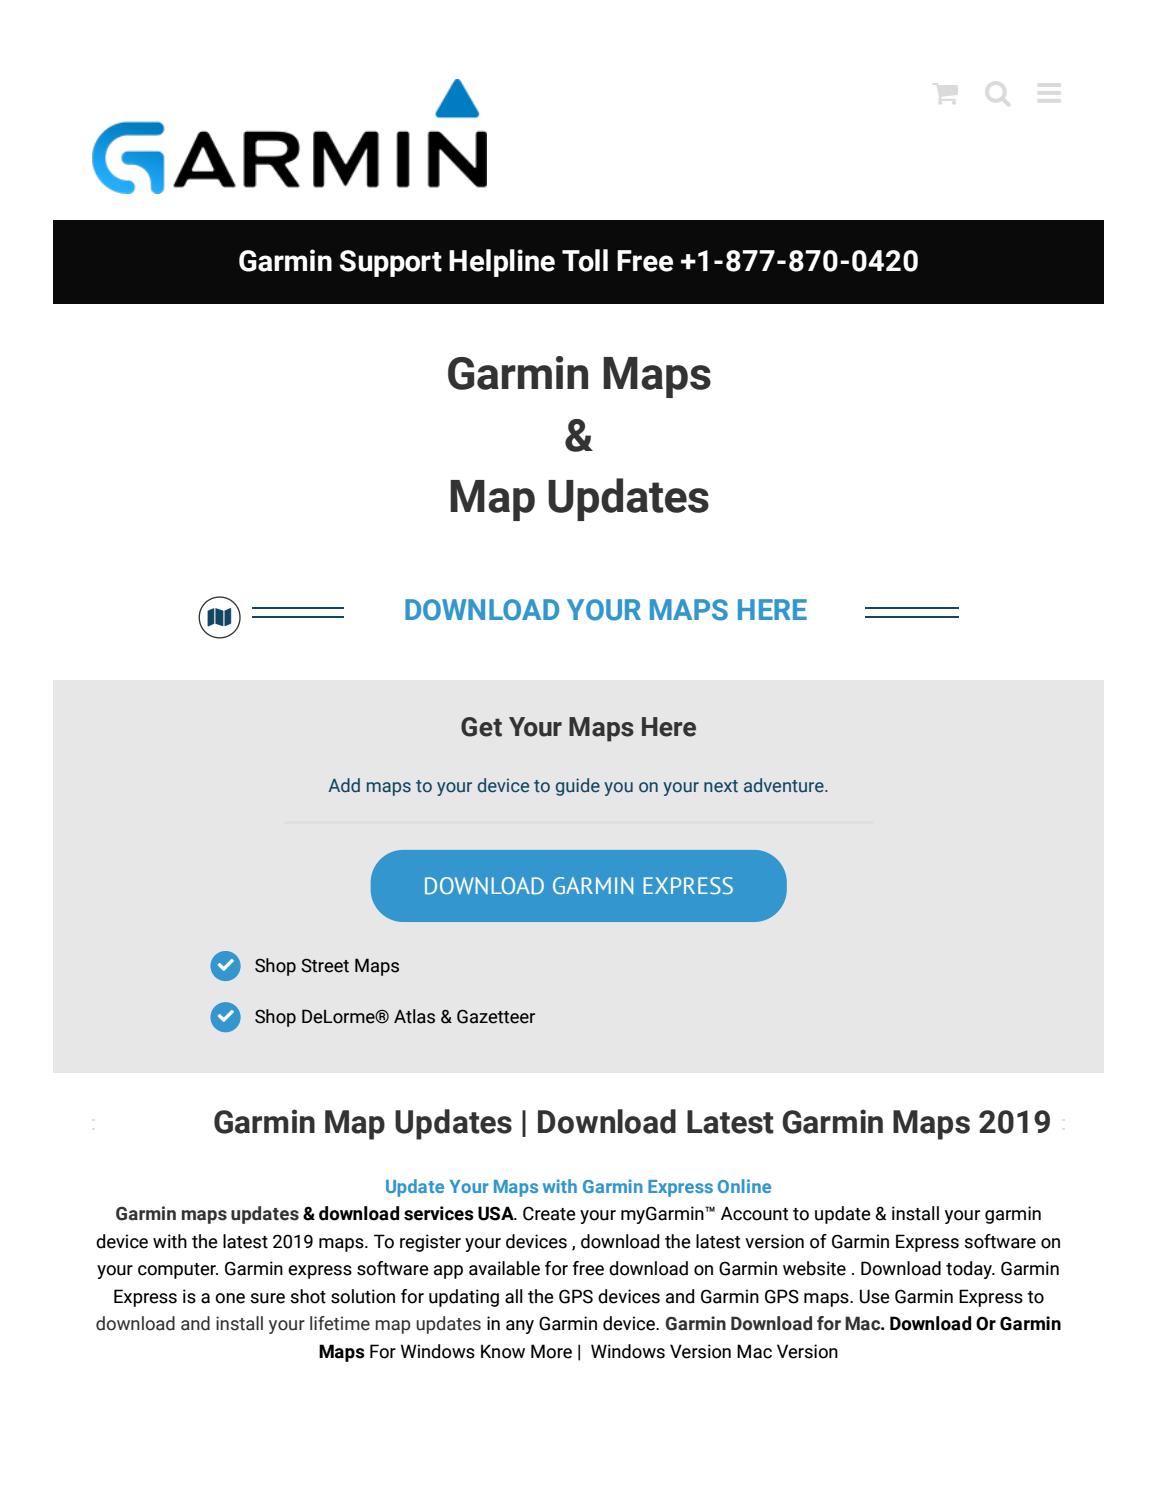 Garmin map updates free download 2018